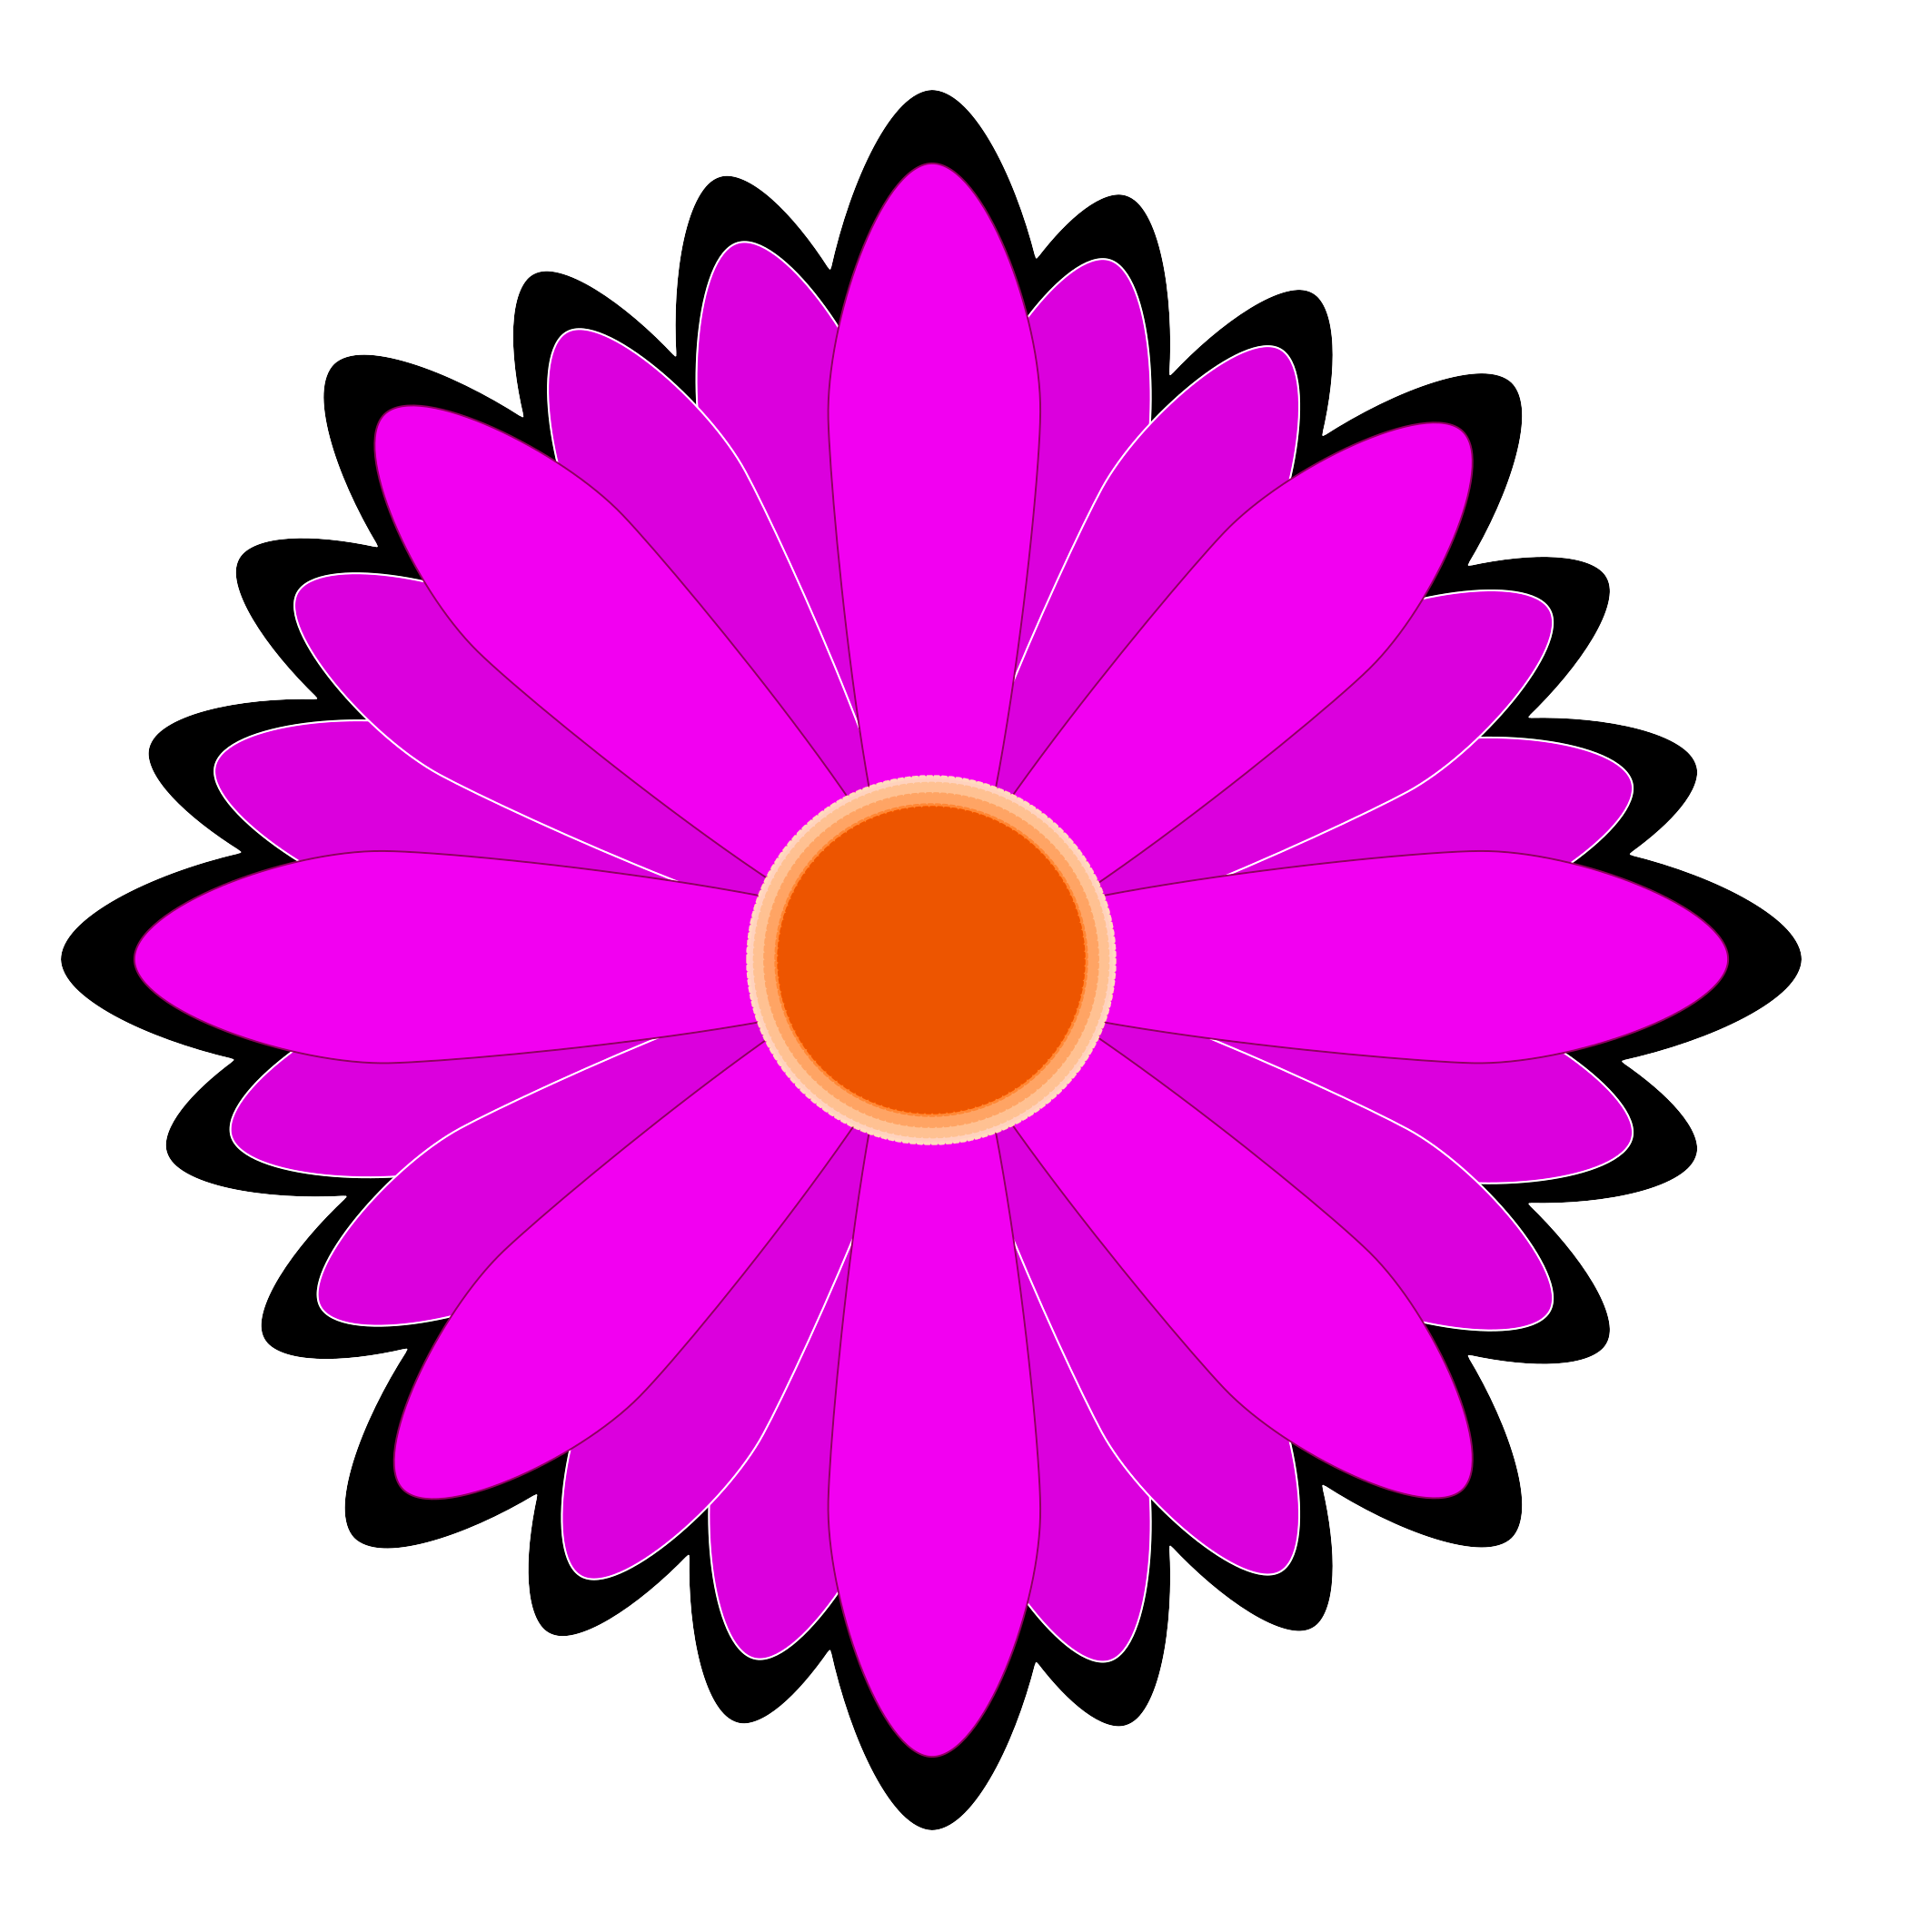 Purple Flower With Orange Center